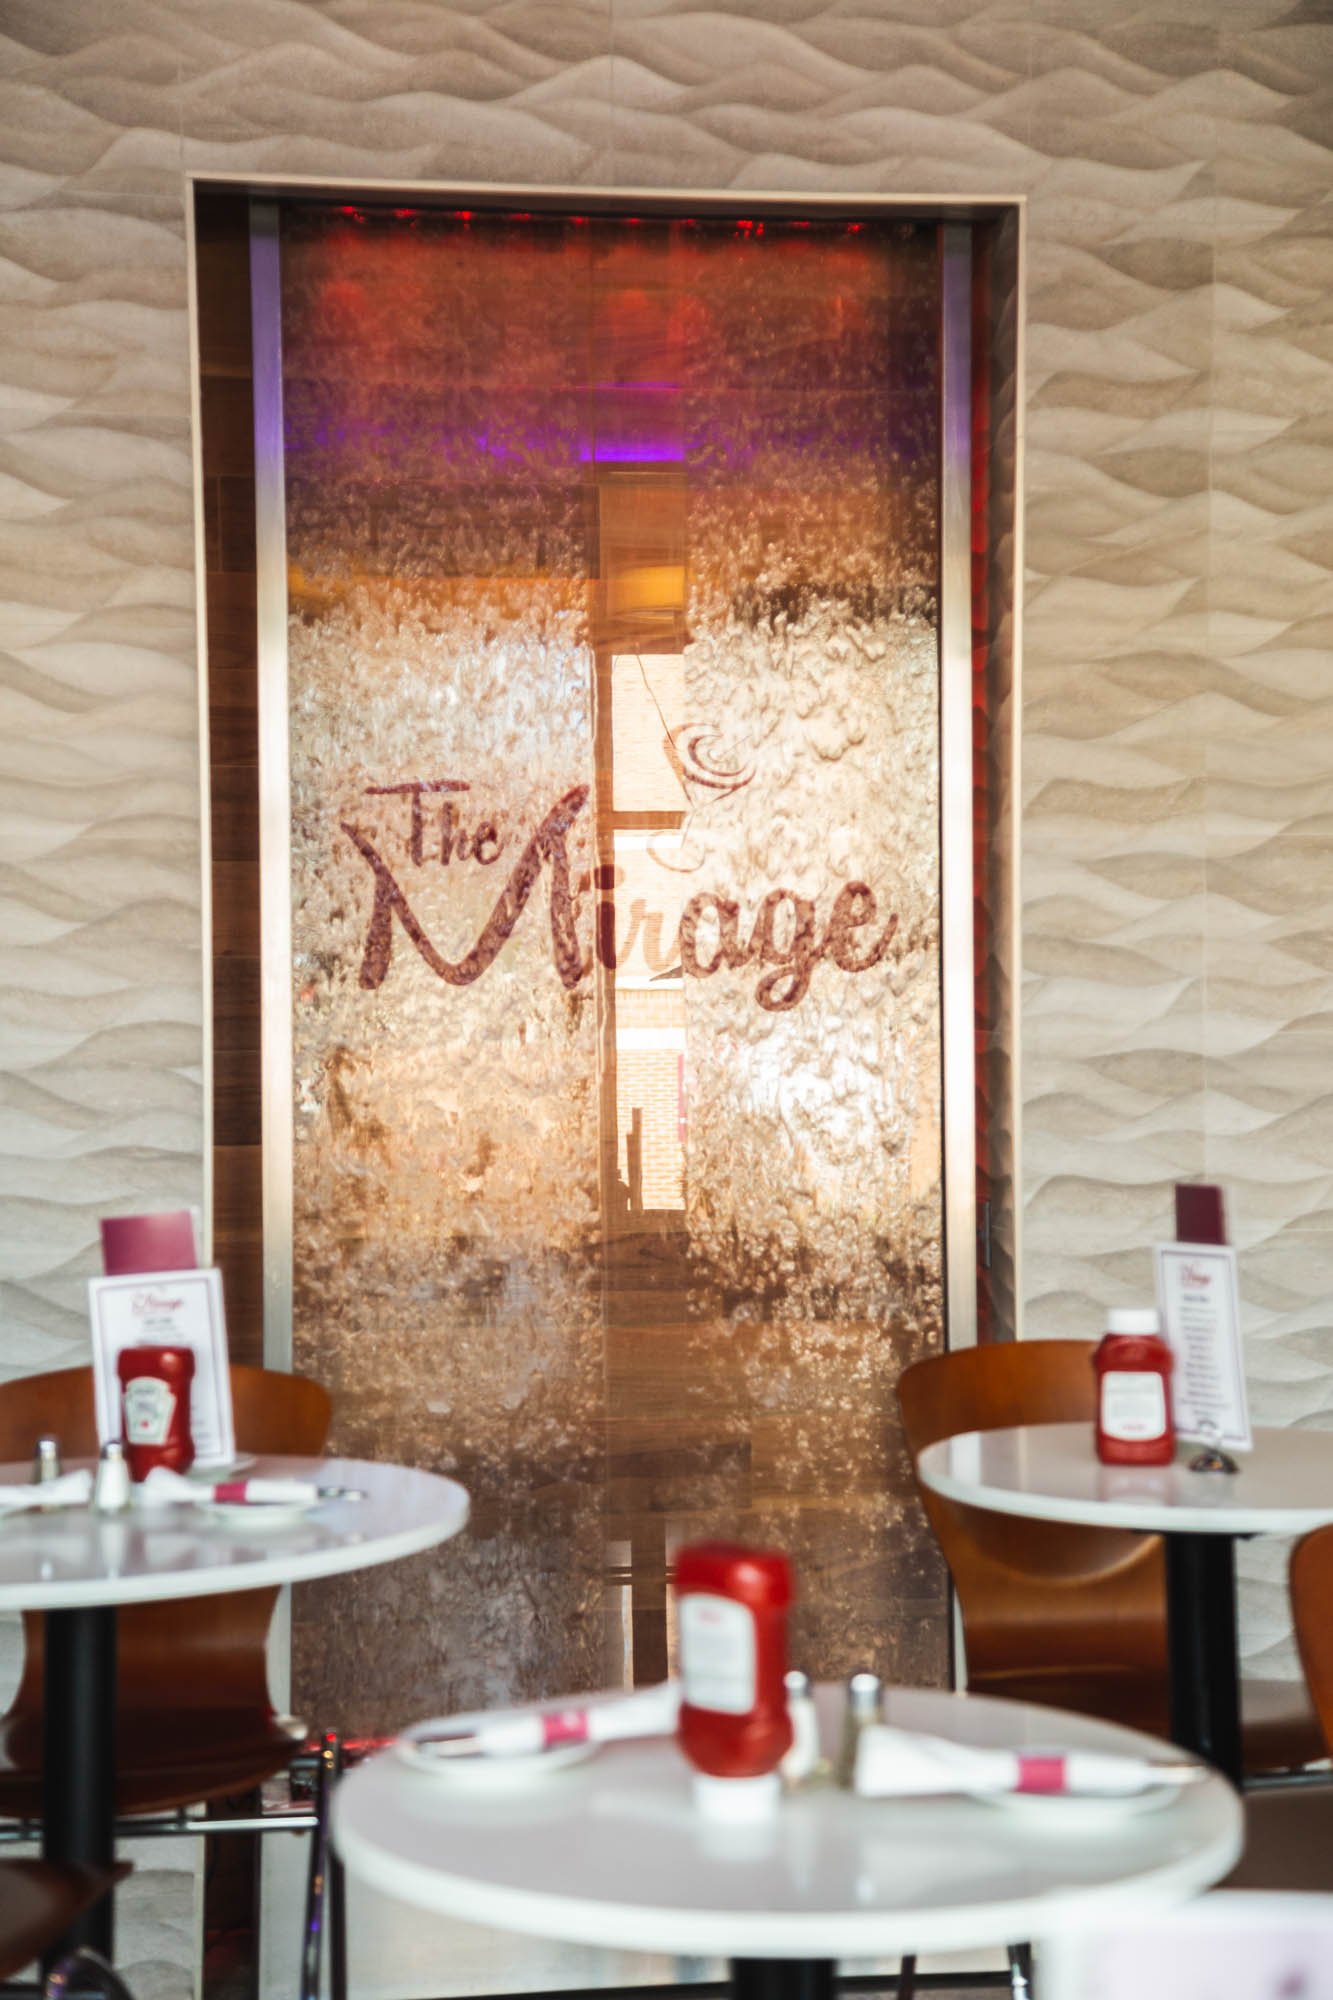 The Mirage Restaurant & Café